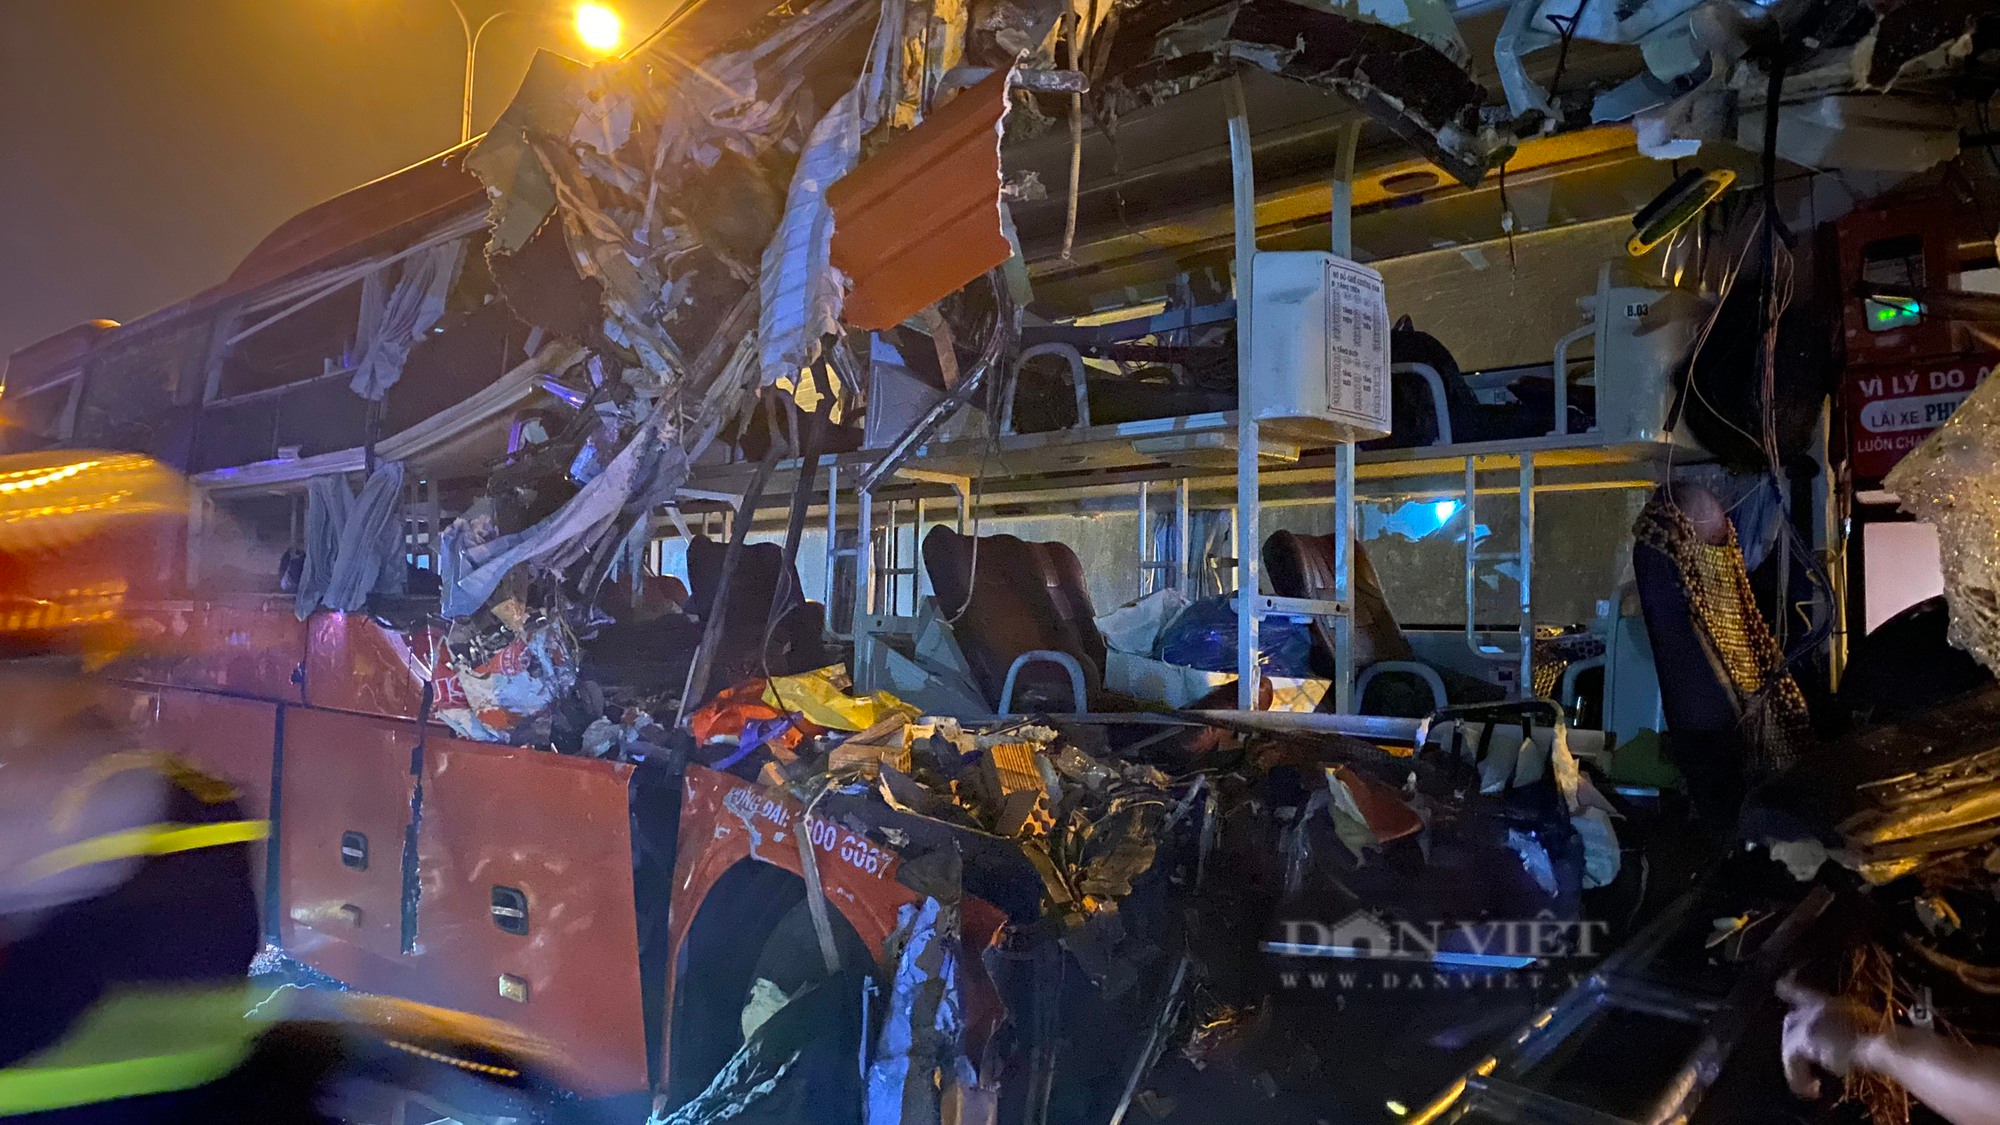 Quảng Nam: Hình ảnh xe khách nát bét sau khi “hôn đít” xe tải làm 3 người chết - Ảnh 5.